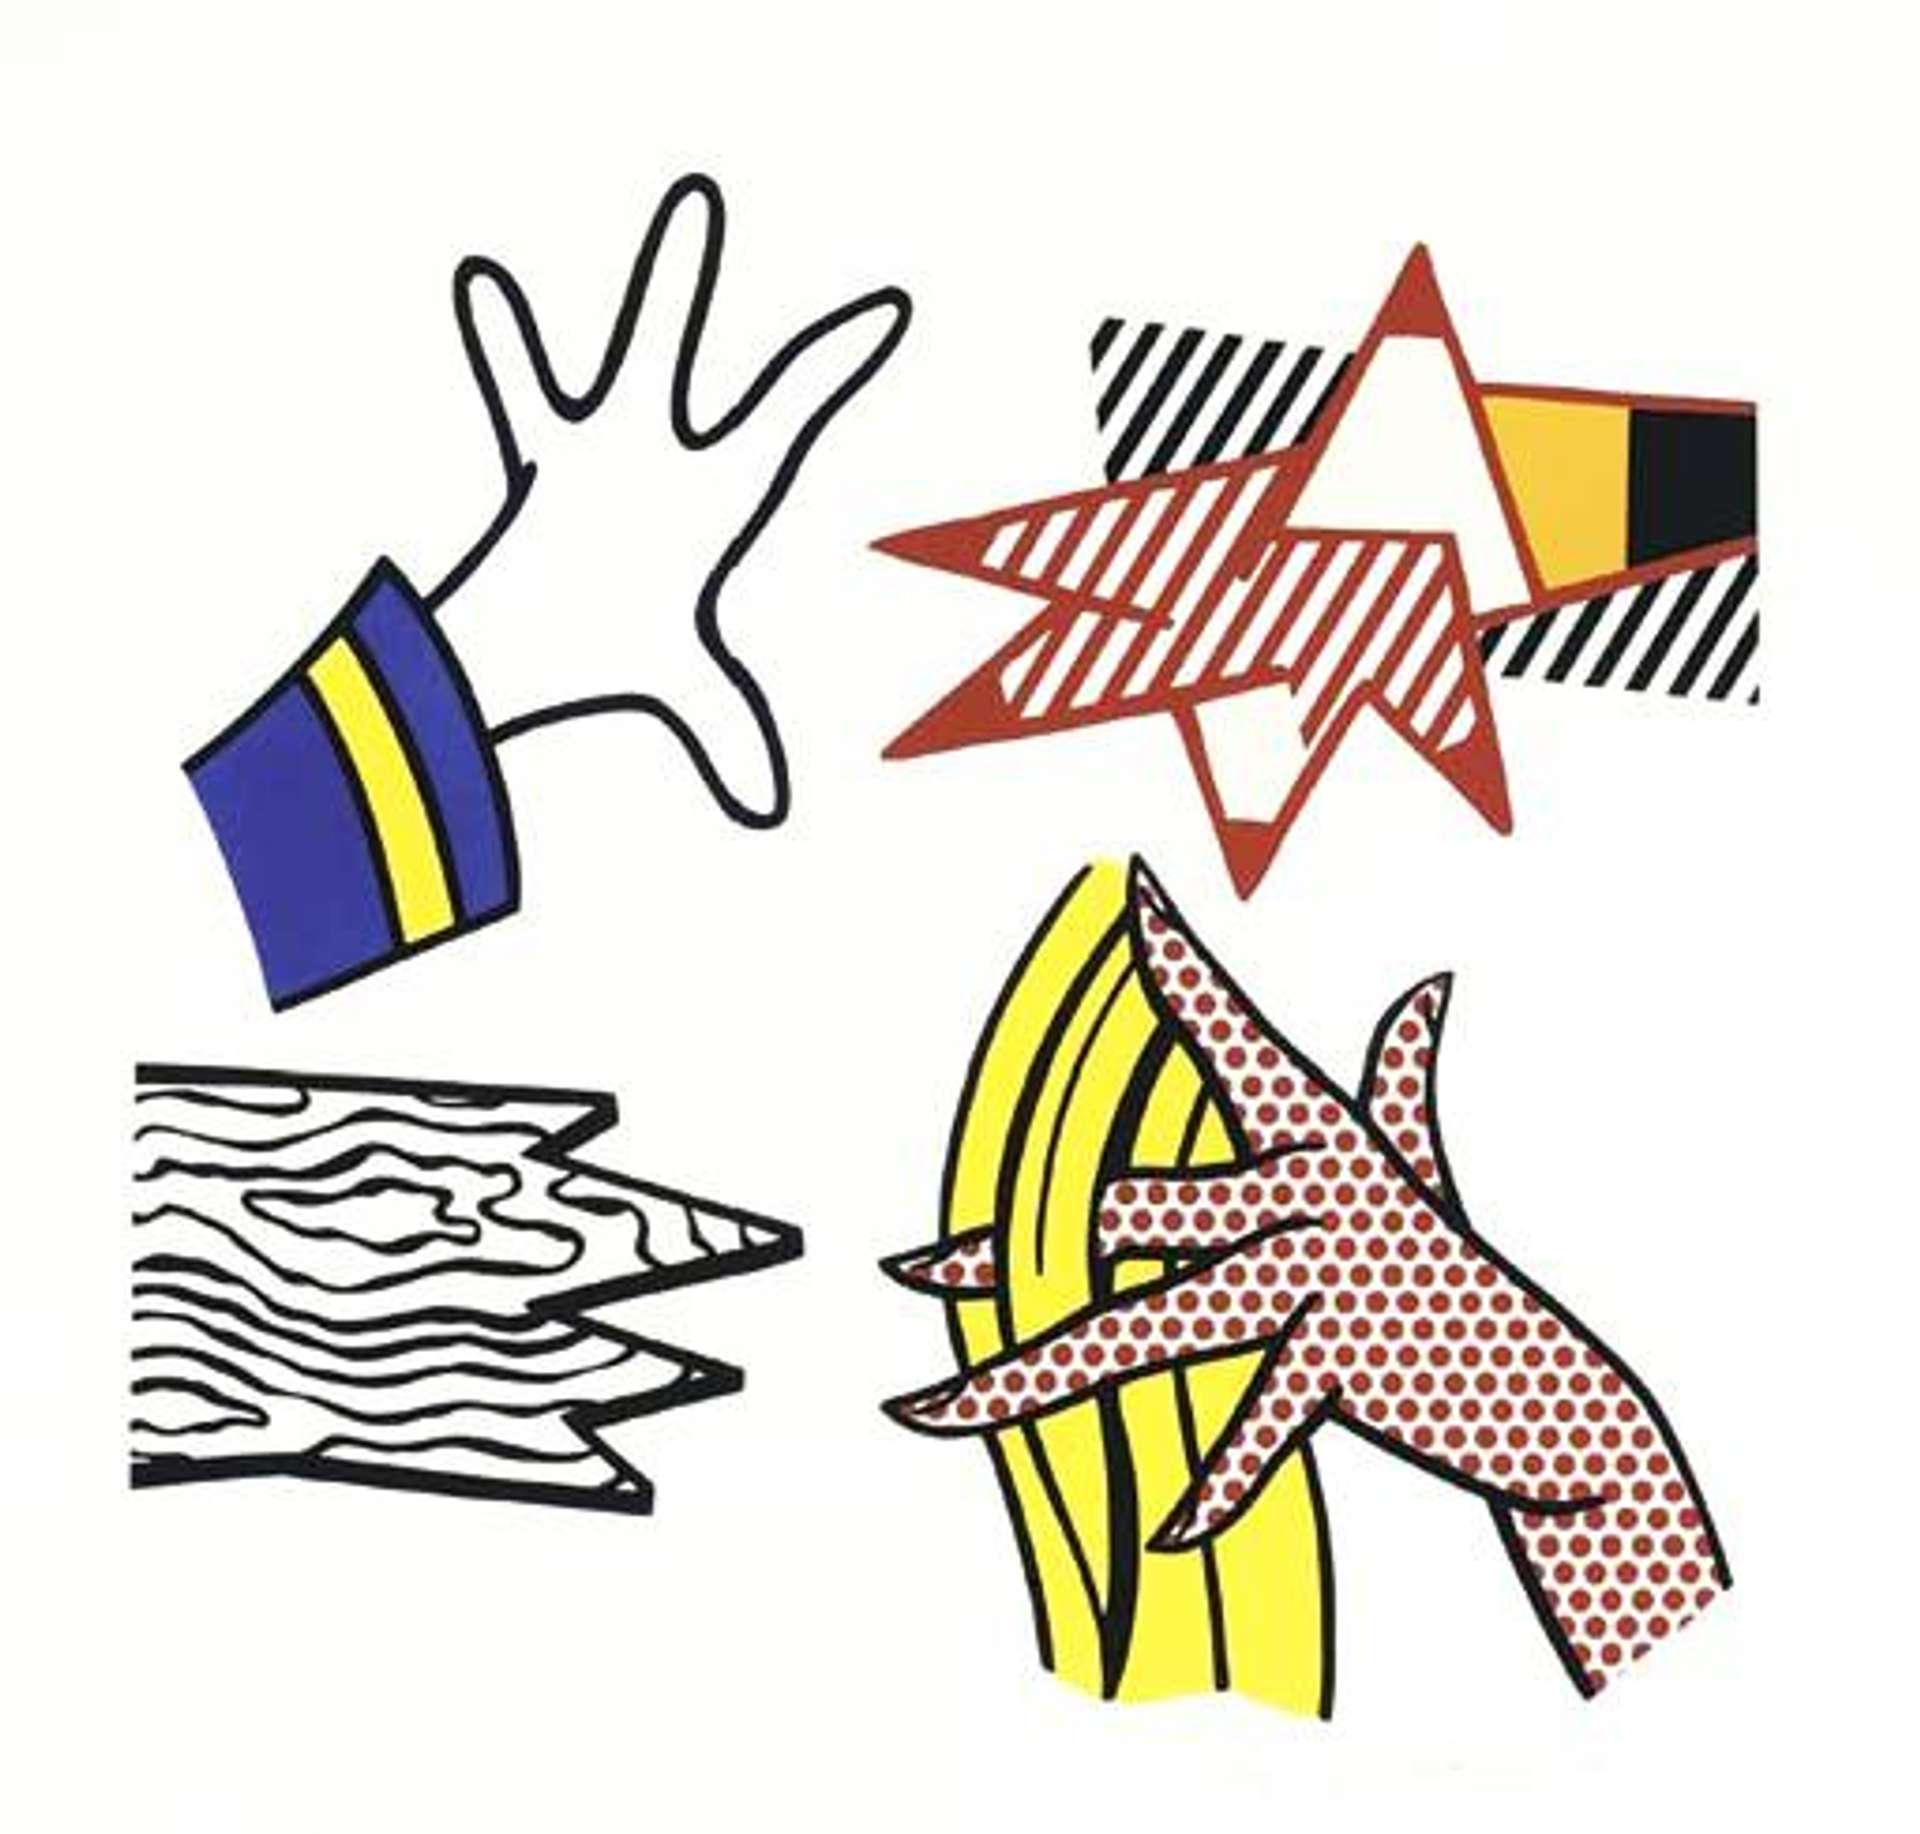 Study Of Hands by Roy Lichtenstein - MyArtBroker